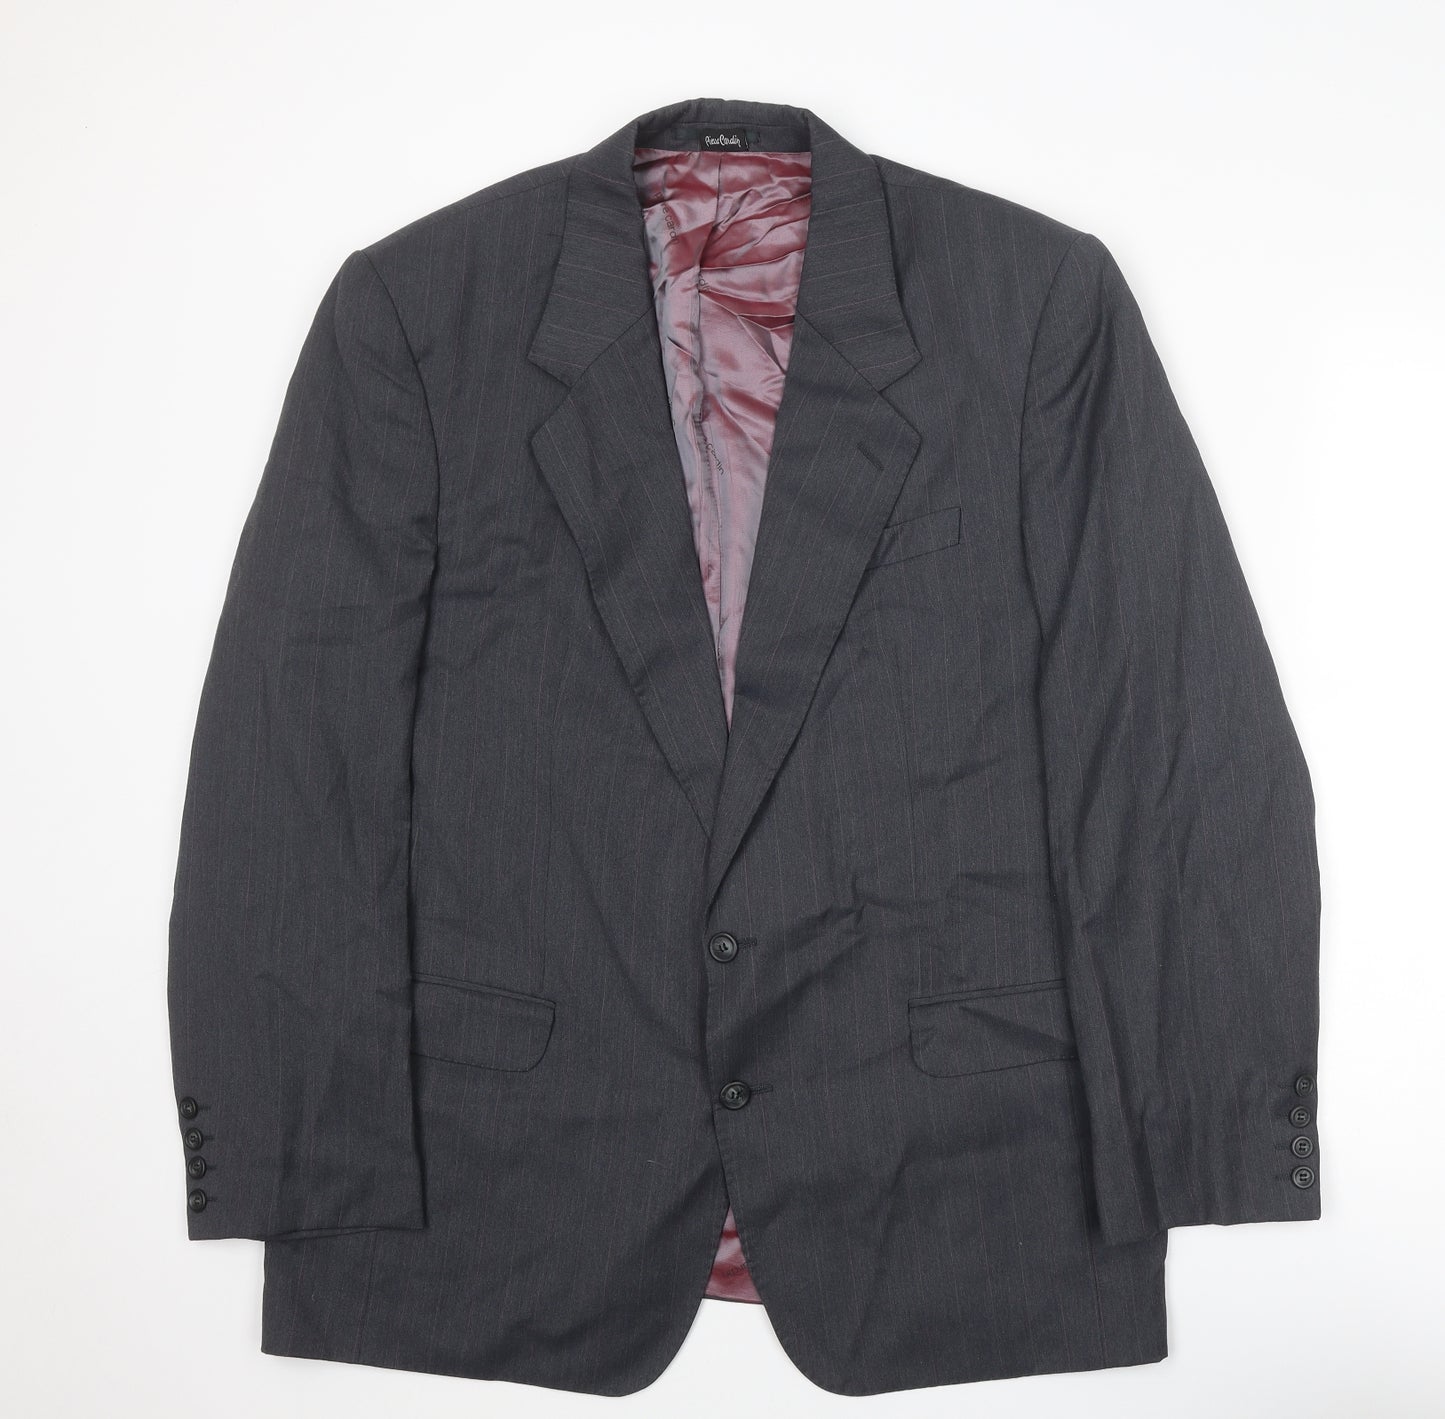 Pierre Cardin Mens Grey Wool Jacket Suit Jacket Size 44 Regular